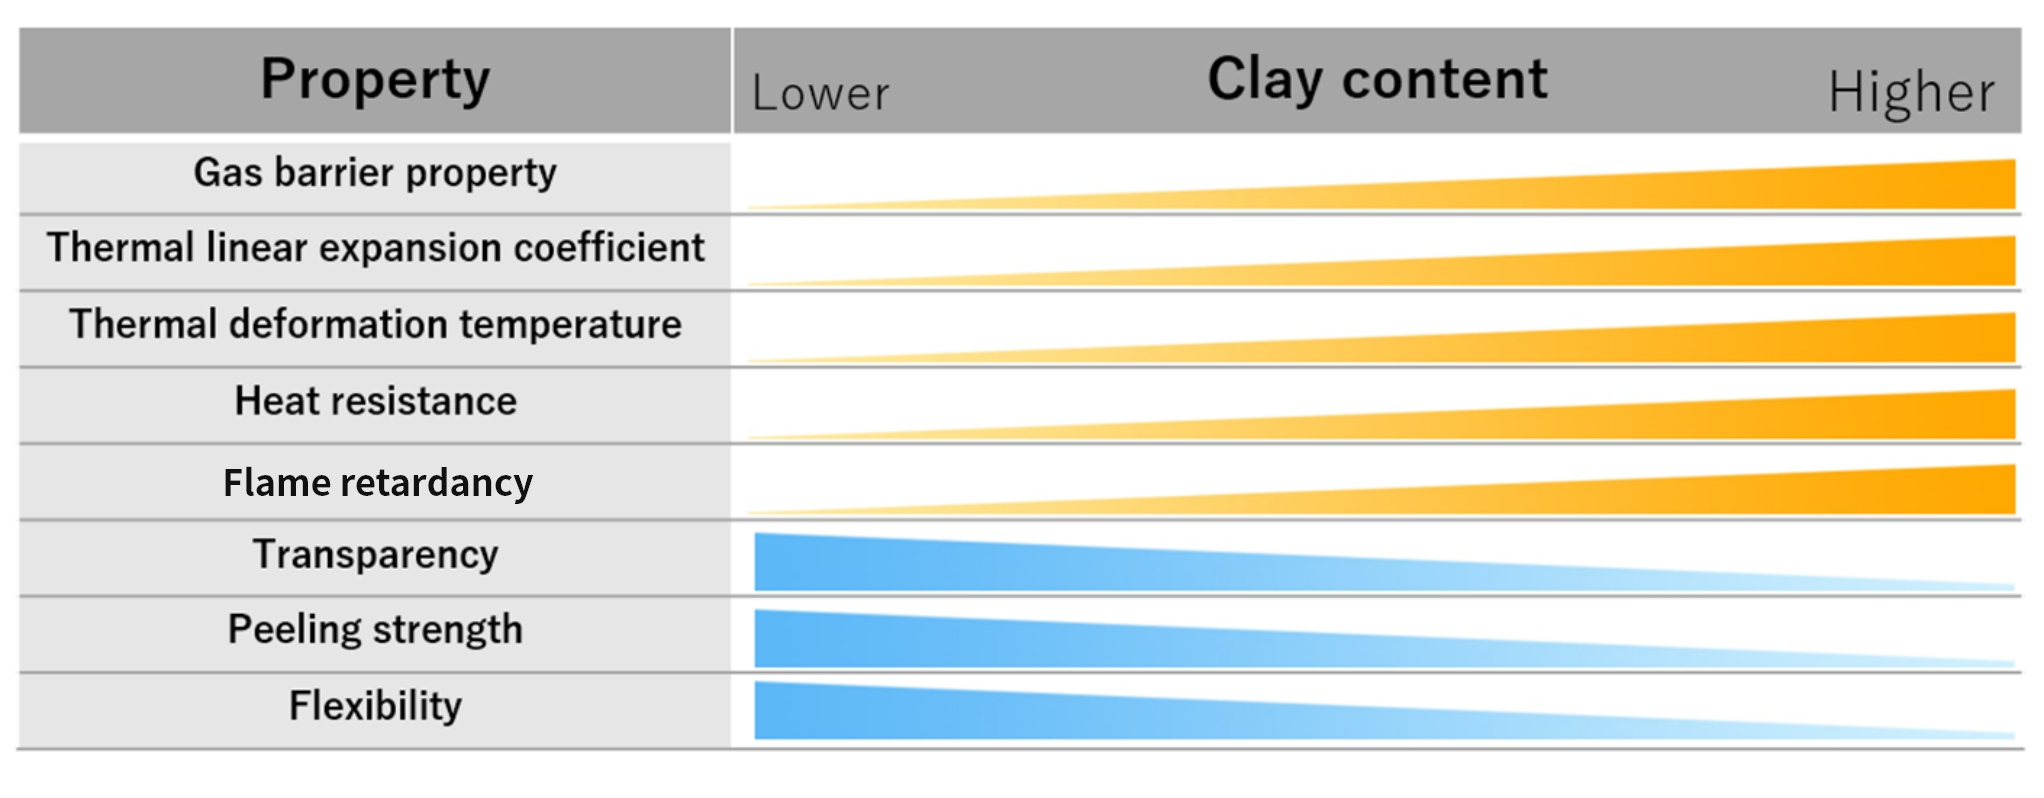 Clay content comparison table